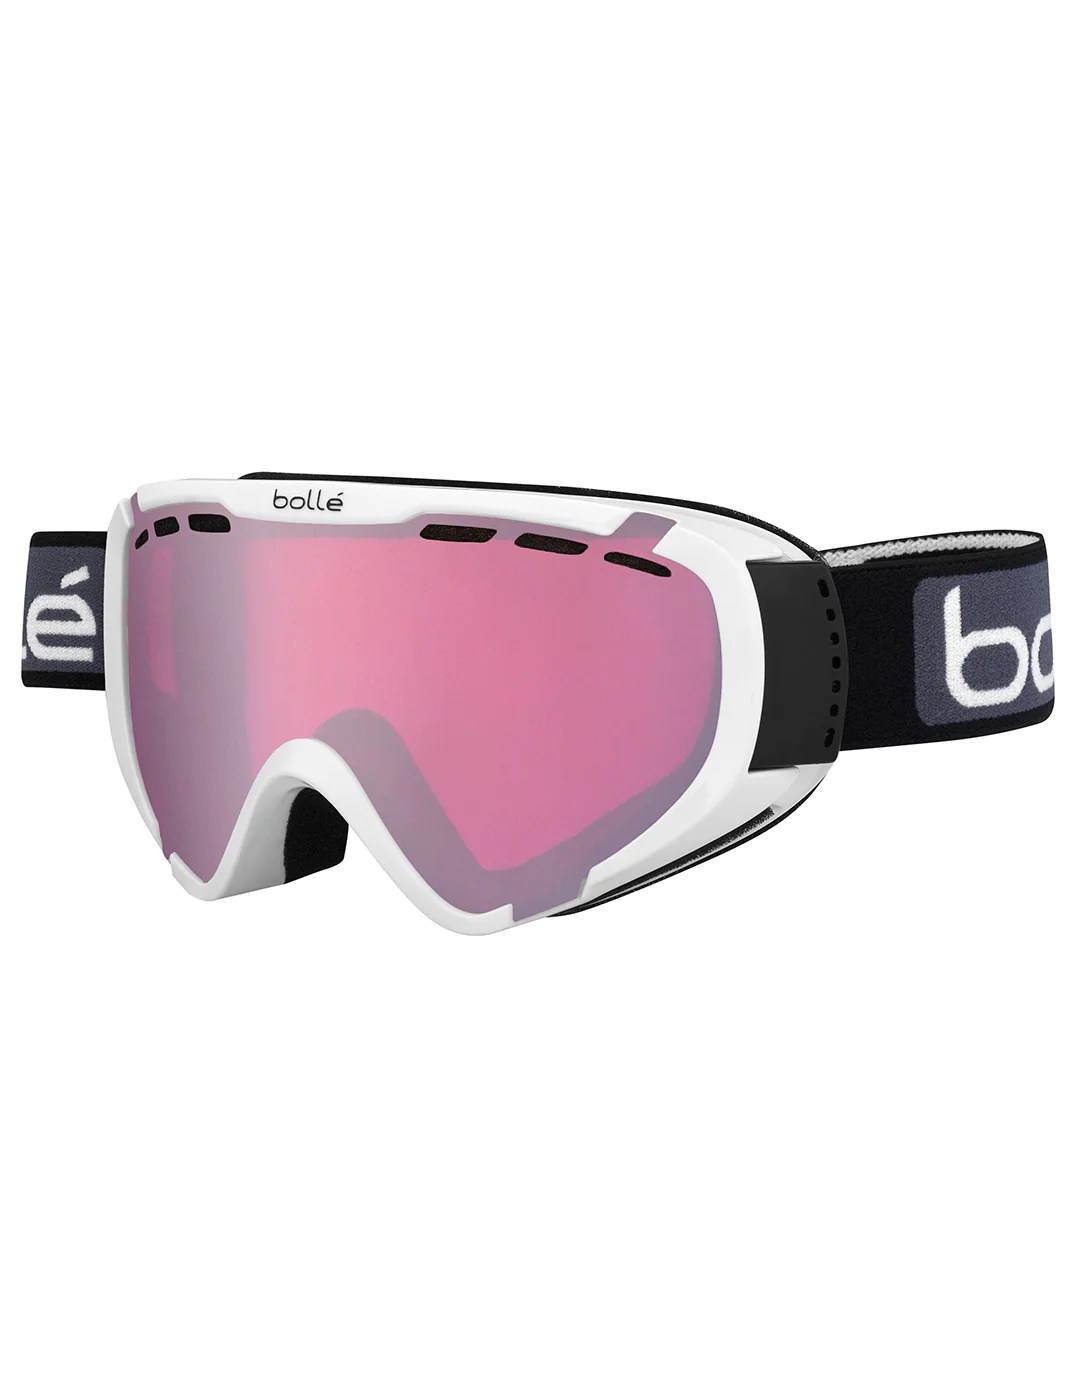 Bolle Kids Explorer OTG Ski Goggle Shiny White with